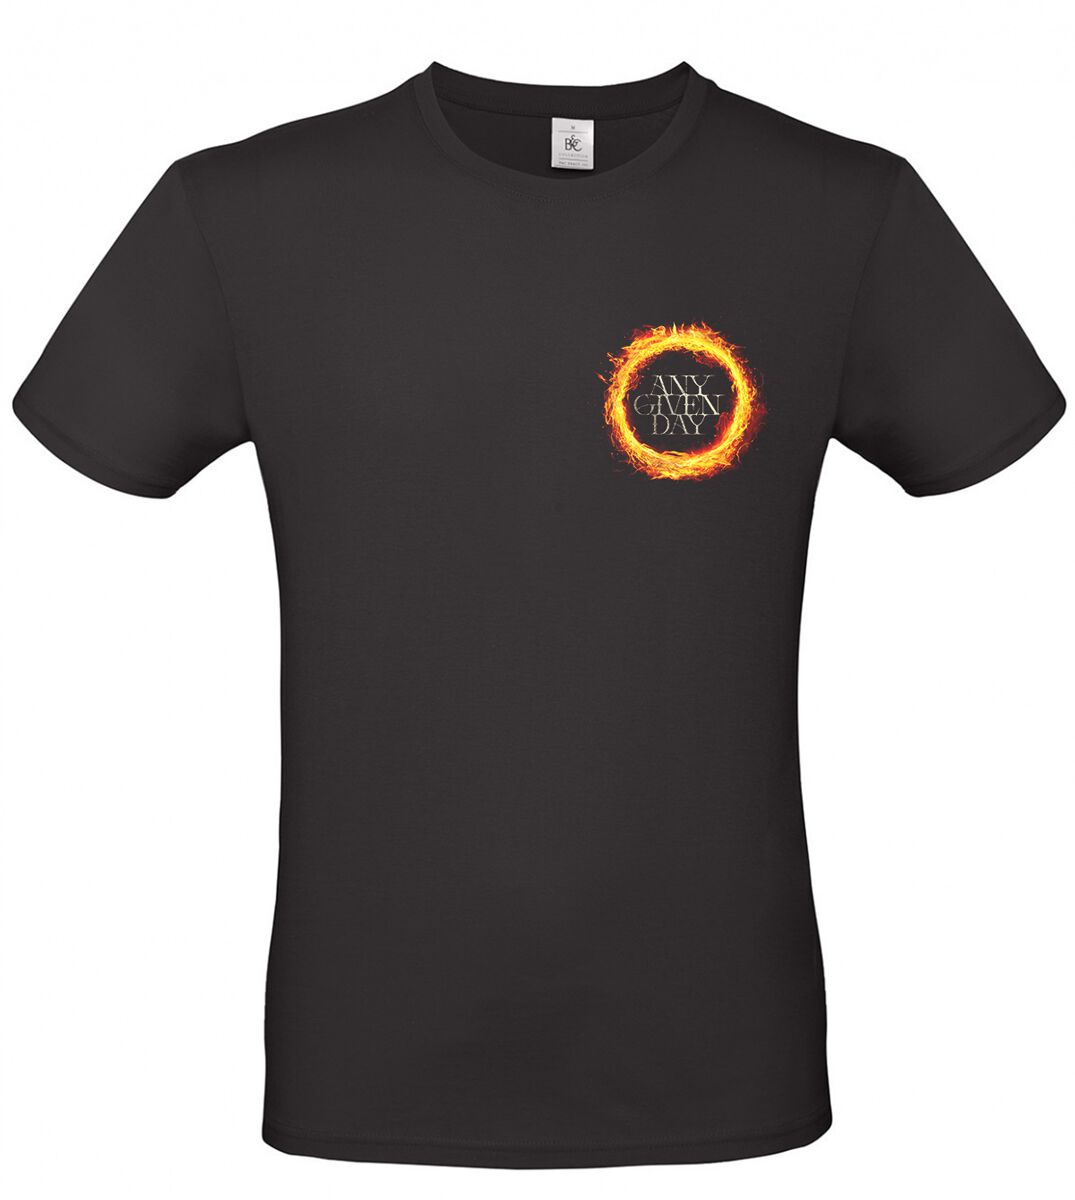 Any Given Day T-Shirt - Limitless - S bis XL - für Männer - Größe L - schwarz  - EMP exklusives Merchandise!